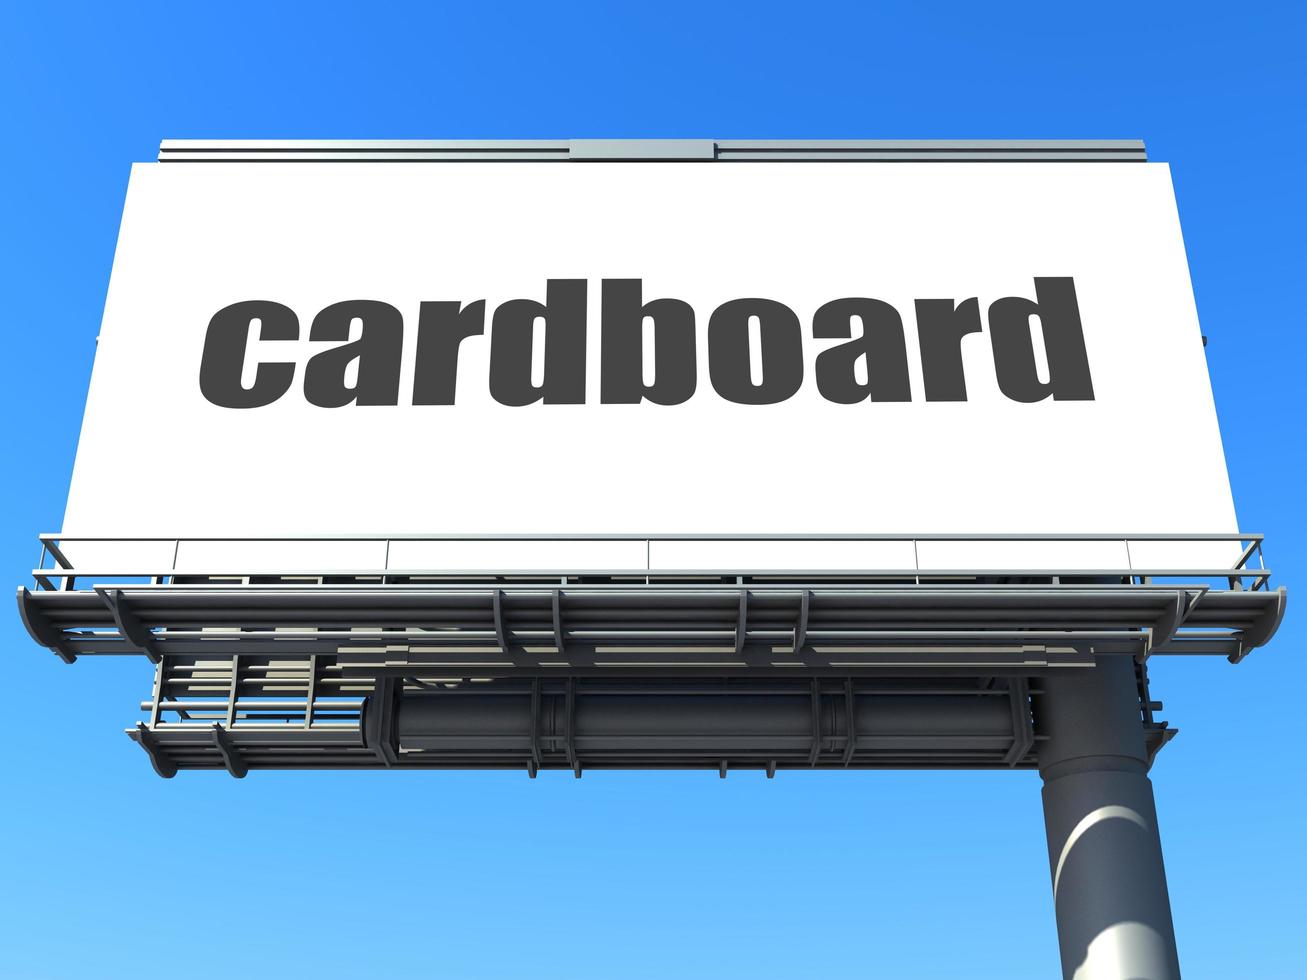 cardboard word on billboard photo